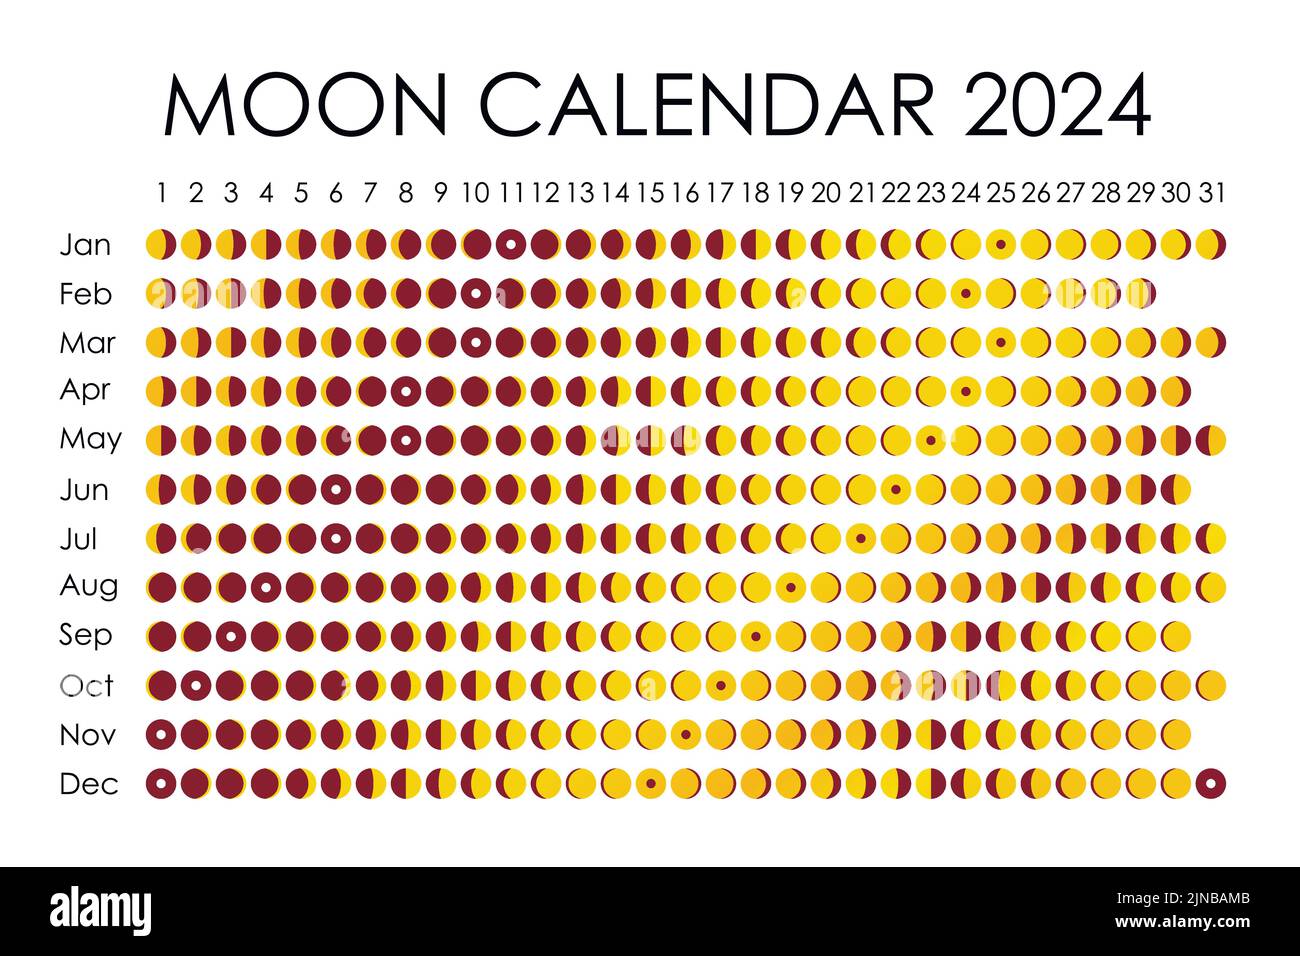 Календарь Луны 2024. Цикл лун на 2024. Календарь полнолуний 2024. График полнолуний 2024.